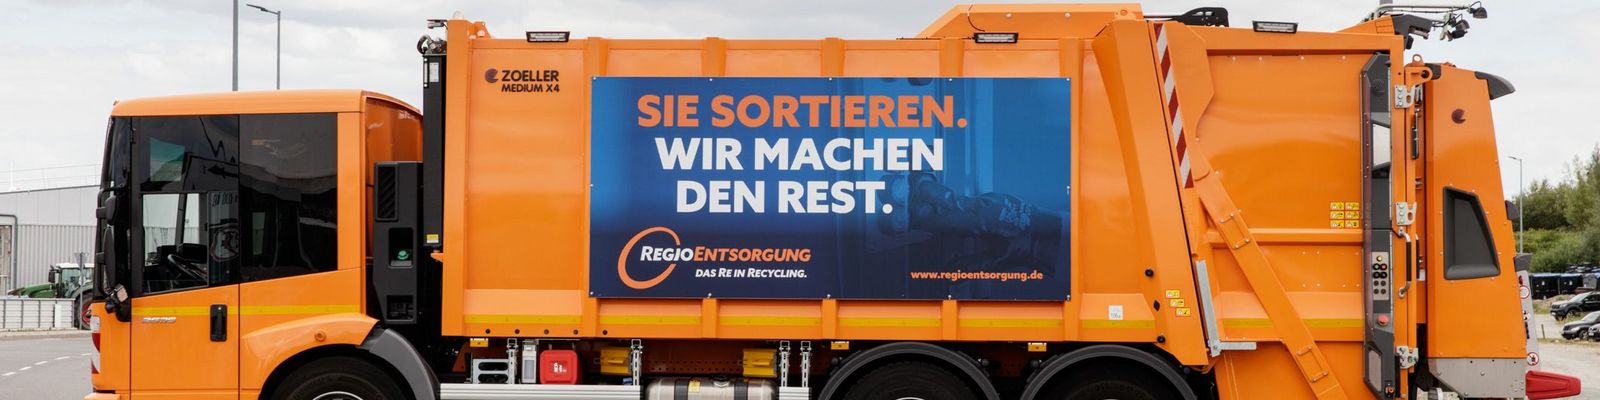 Pressmüllfahrzeug der RegioEntsorgung mit Banner "Sie sortieren. Wir machen den Rest"